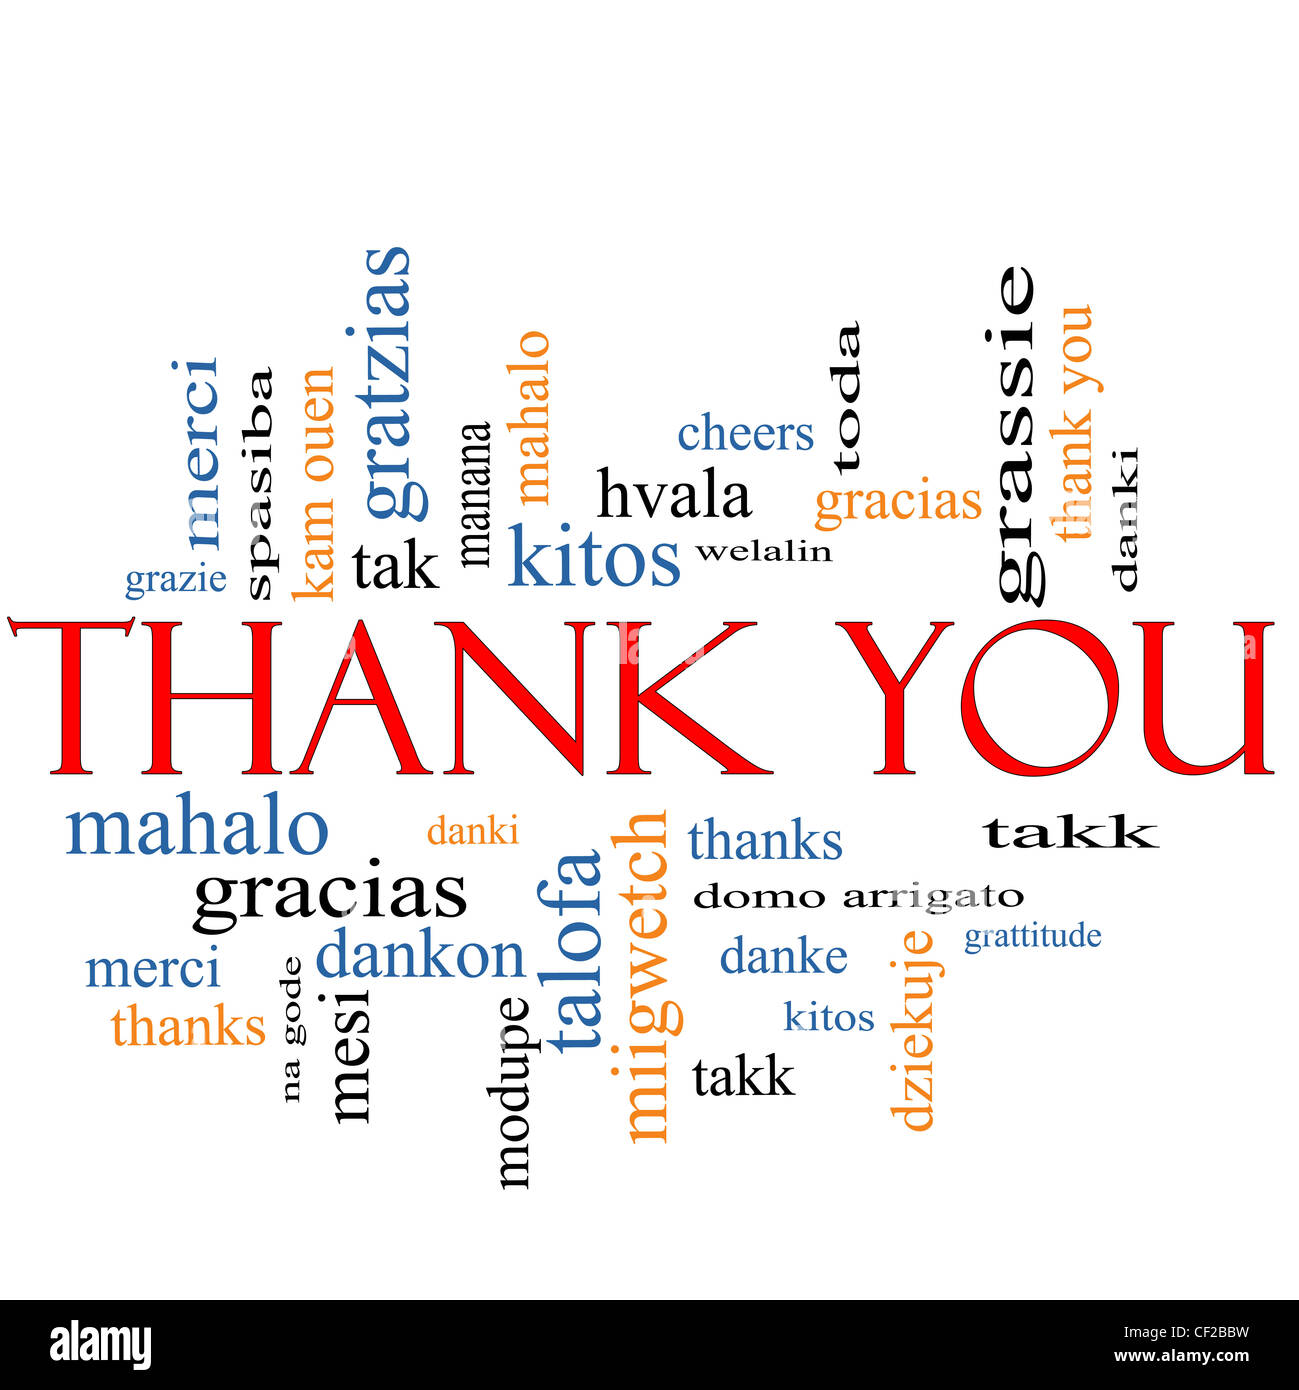 Vielen Dank Word Cloud-Konzept mit großen Begriffe in verschiedenen Sprachen wie Merci, Mahalo, Danke, Gracias, Tischbausystems und vieles mehr. Stockfoto